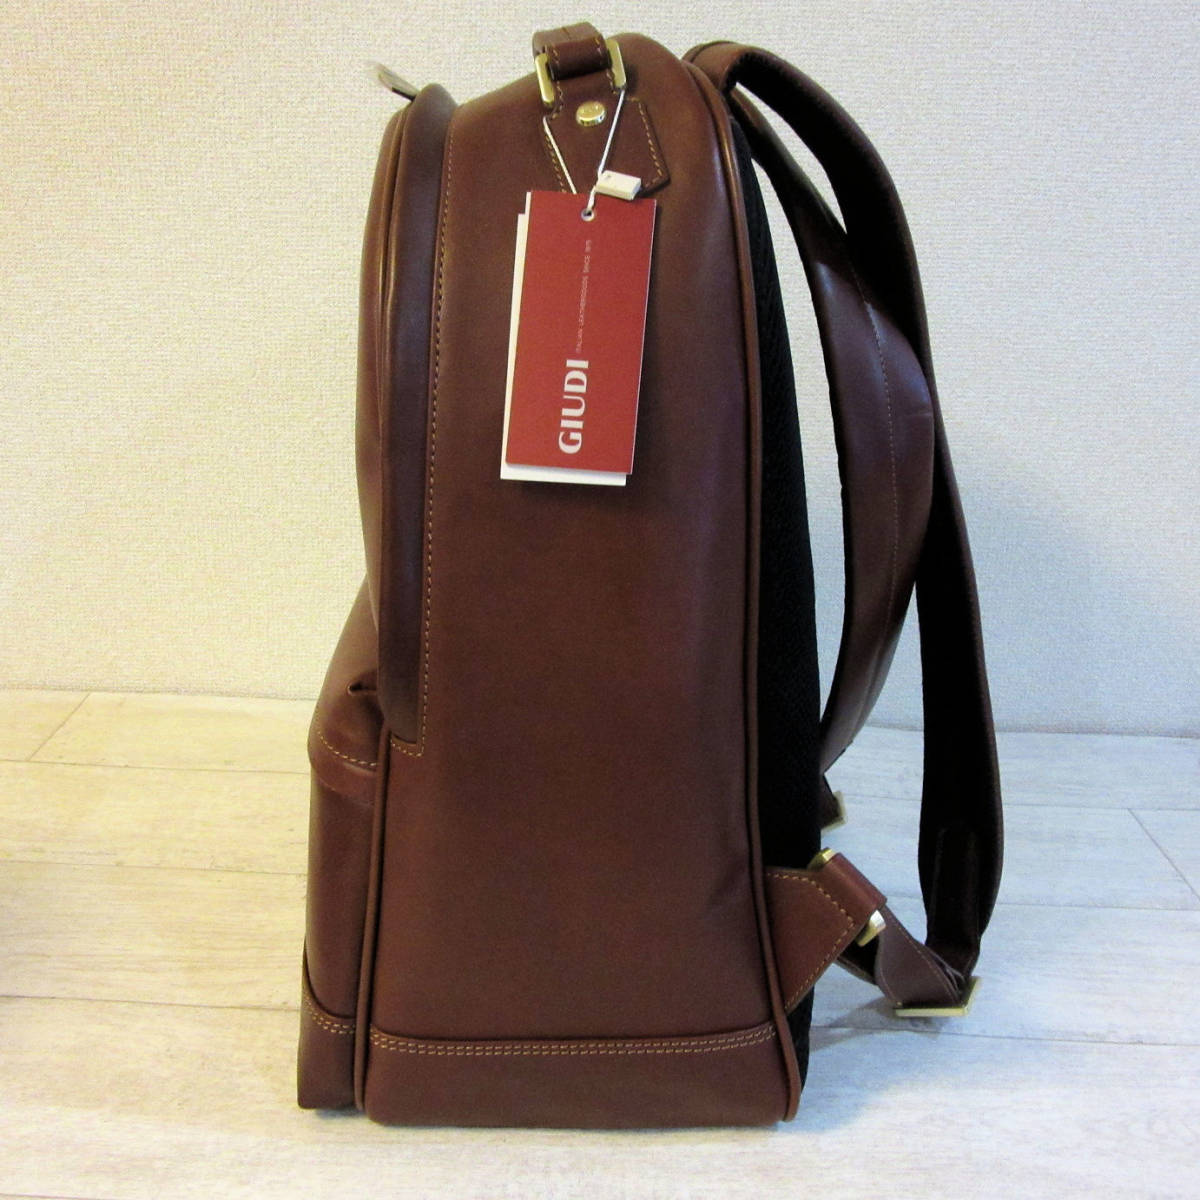 新品 タグ付き GIUDI イタリア製 欧州工房職人による高級バッグ 本革 レザー リュックサック バックパック 鞄 茶色 ブラウン メンズ_画像2